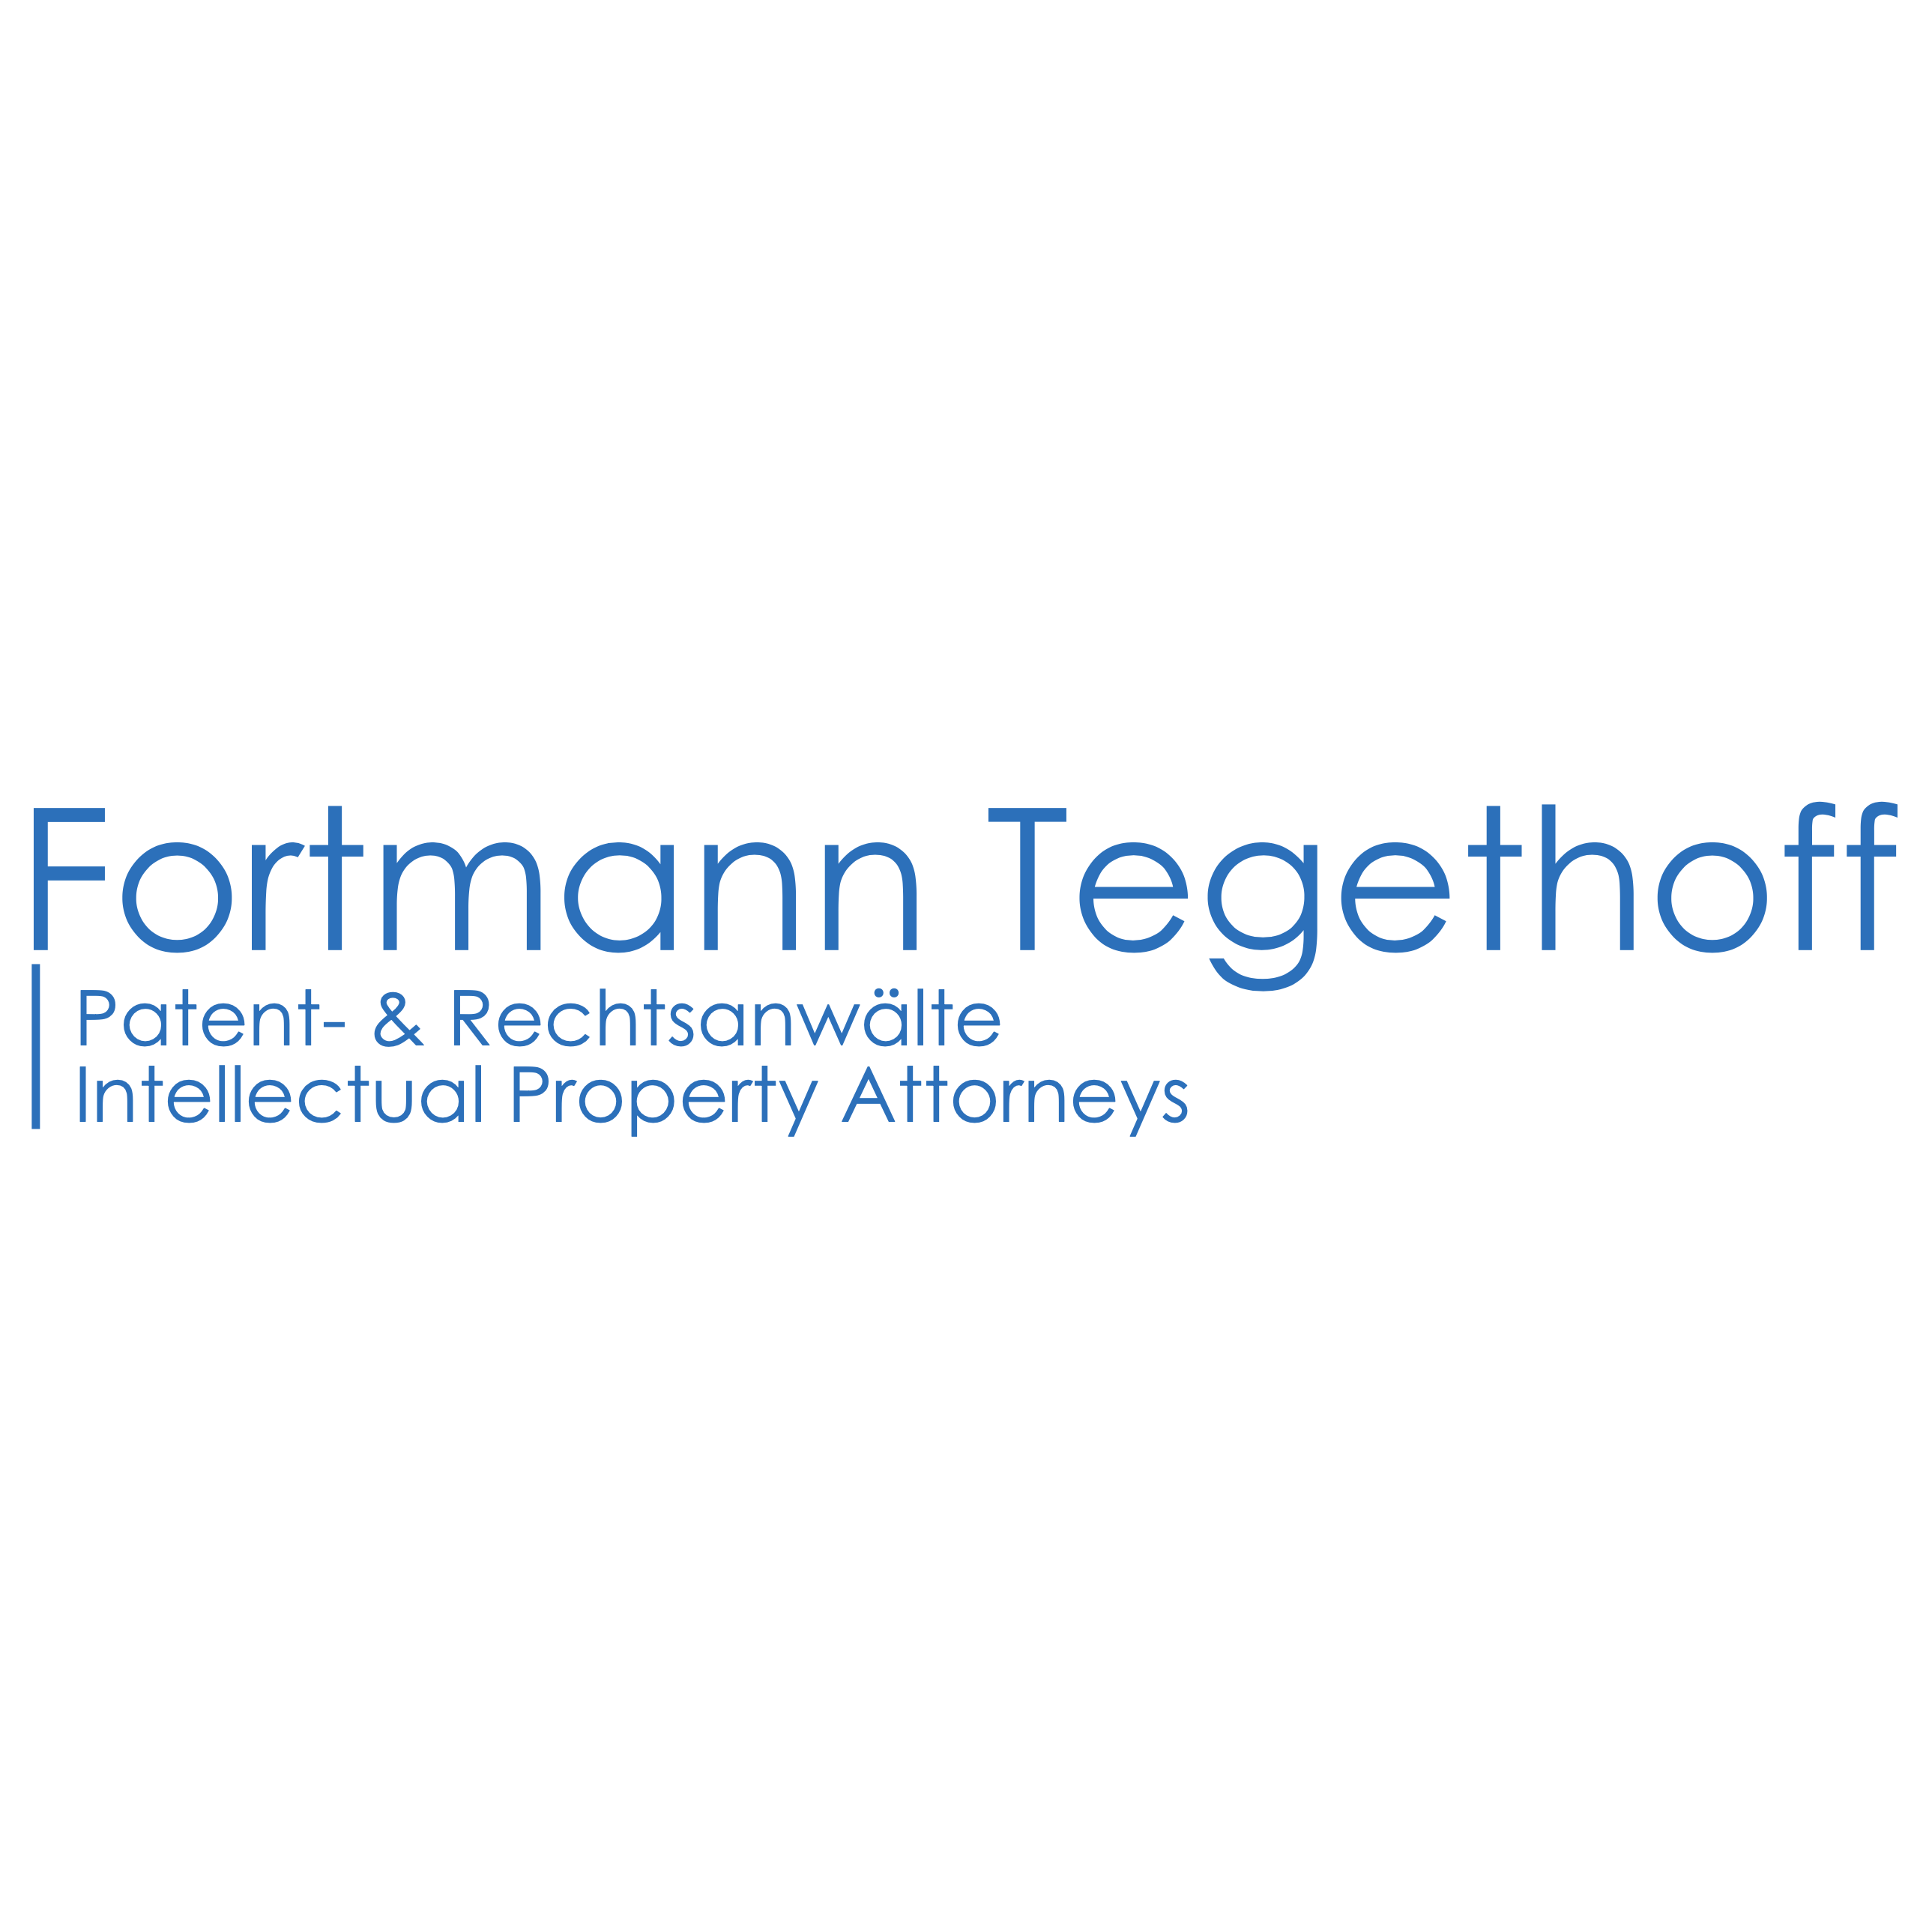 Fortmann Tegethoff Patent- und Rechtsanwälte